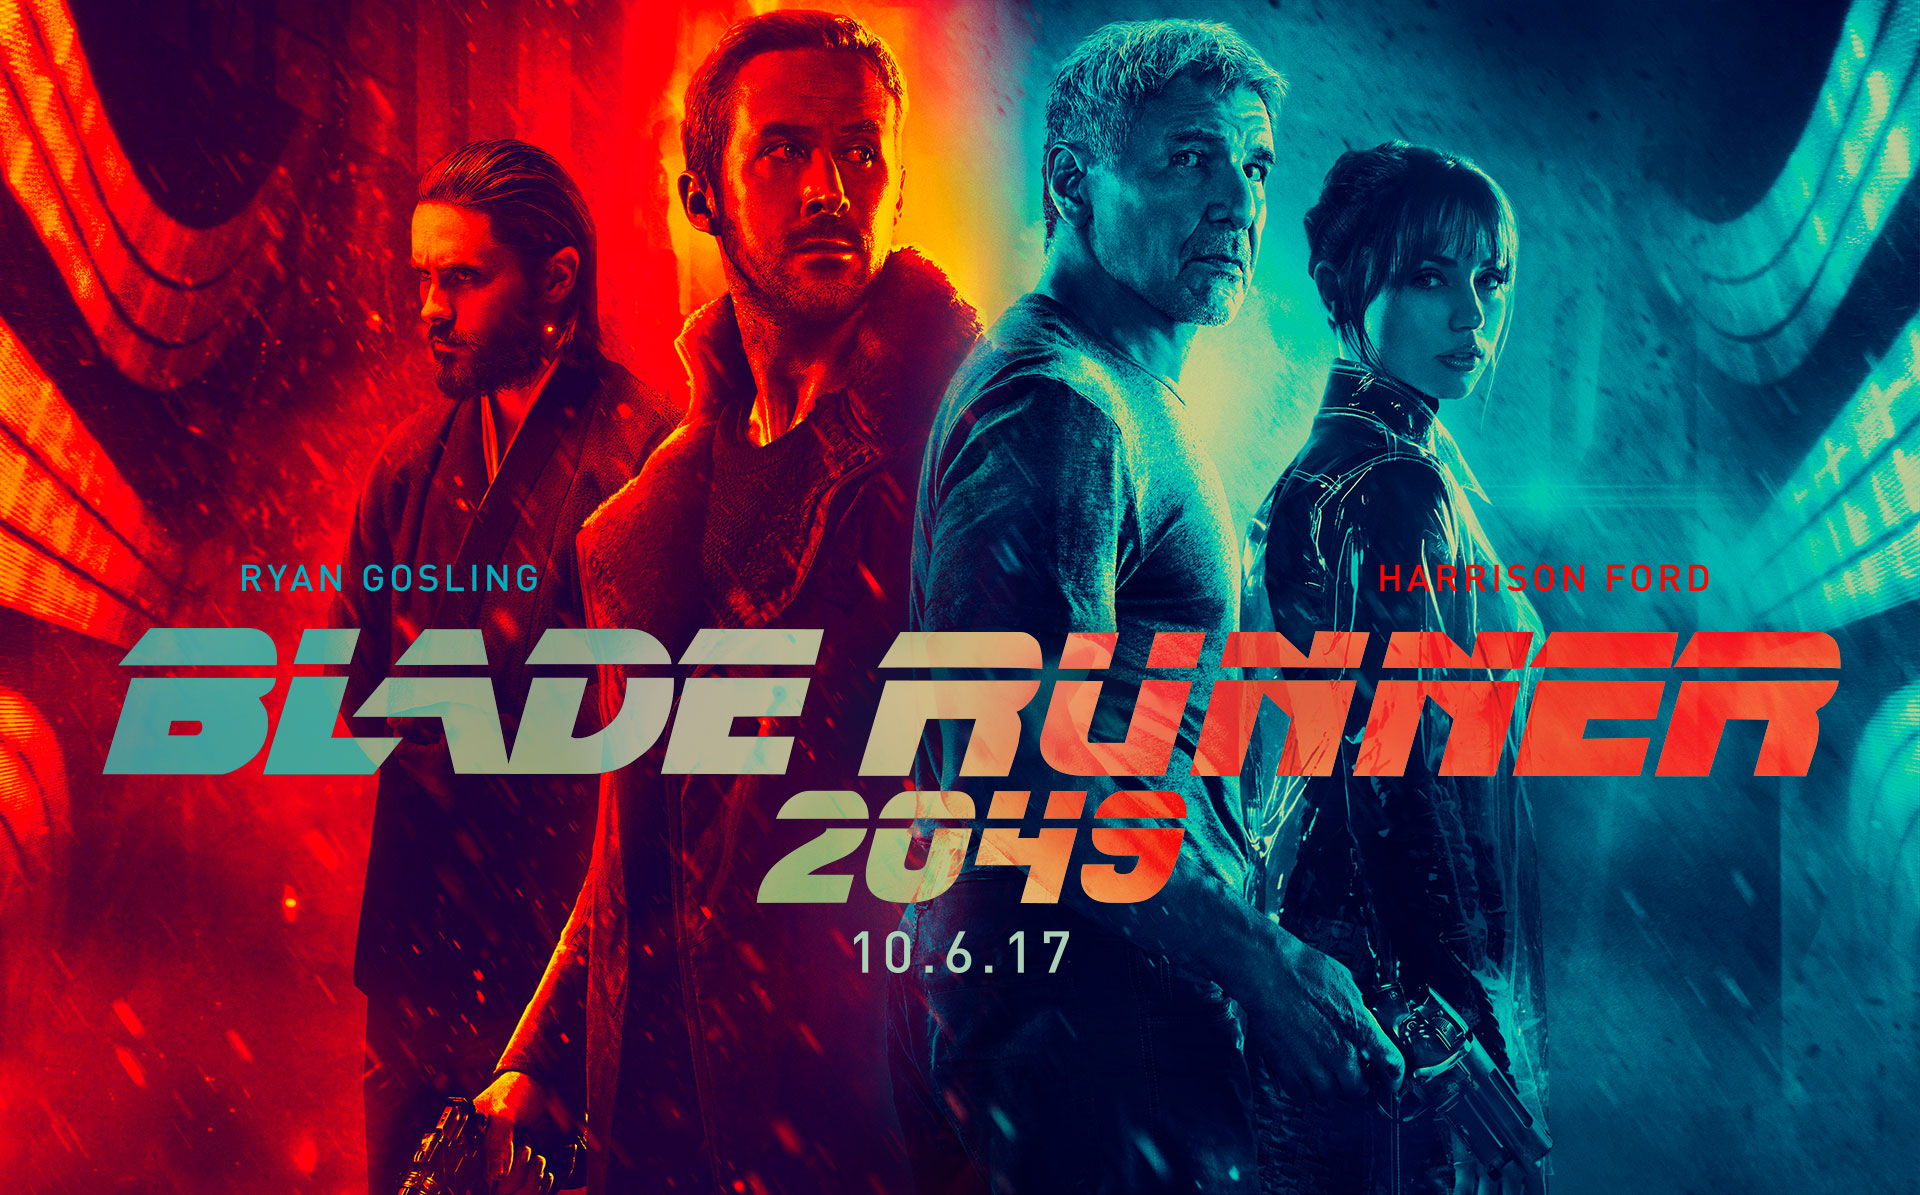 âBlade Runner 2049â Review: What Does the Future Hold?